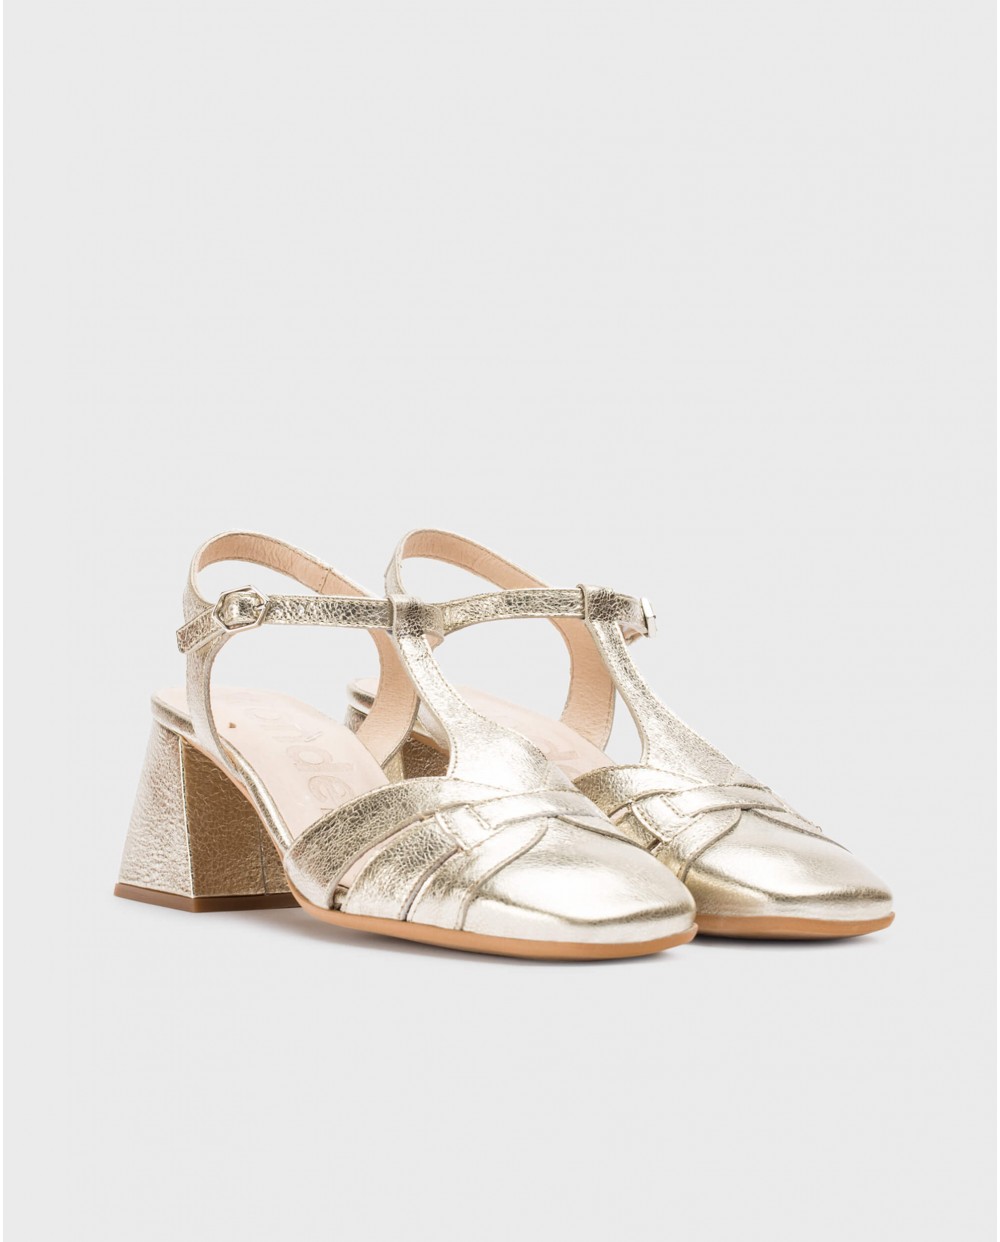 Wonders-Heels-Platinum Milena heeled sandals